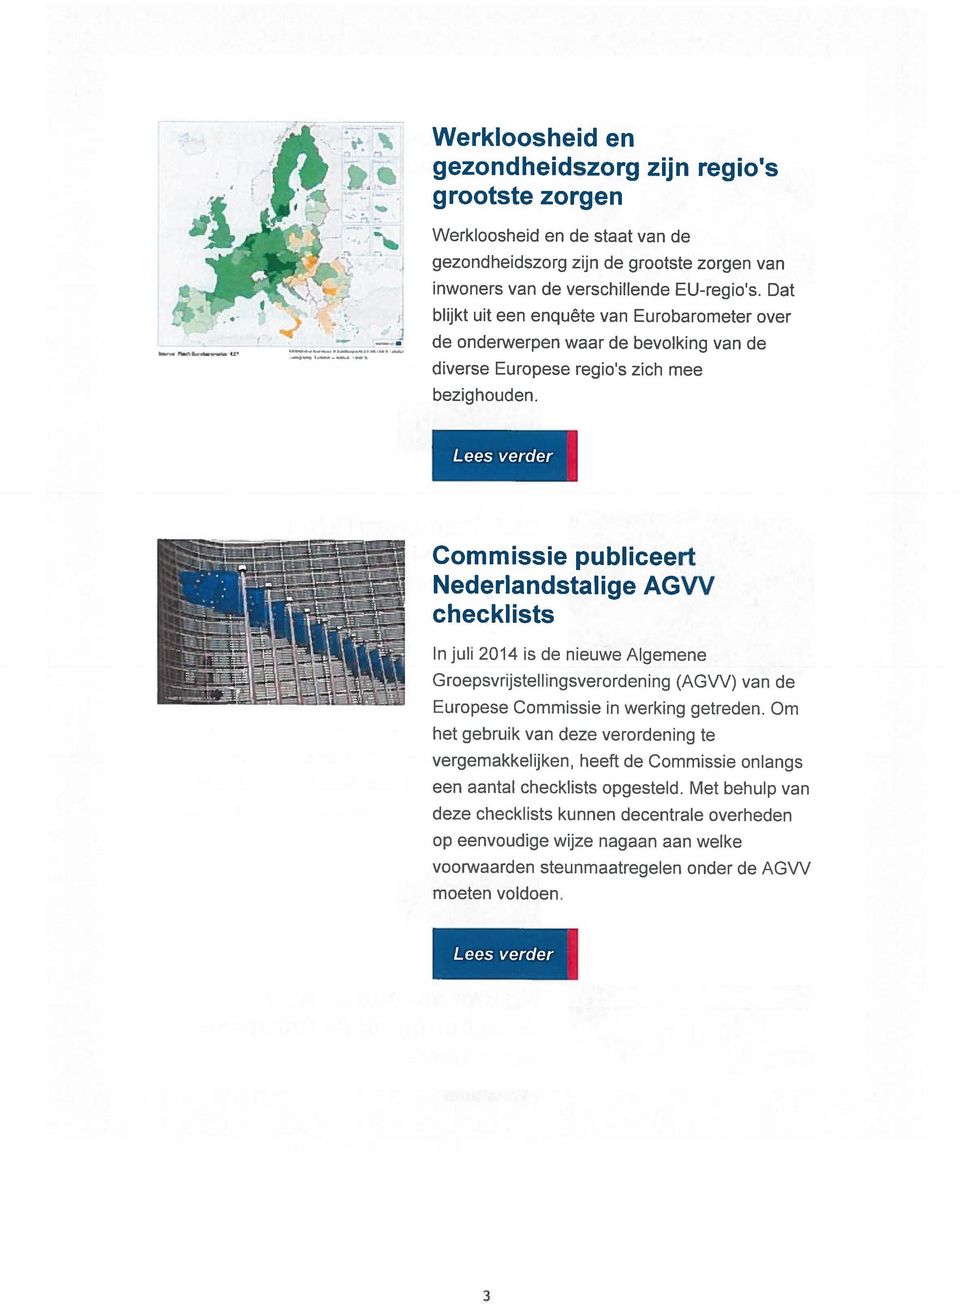 Commissie publiceert Nederlandstalige AGVV checklists In juli 2014 is de nieuwe Algemene Groepsvrijstellingsverordening (AGVV) van de Europese Commissie in werking getreden.